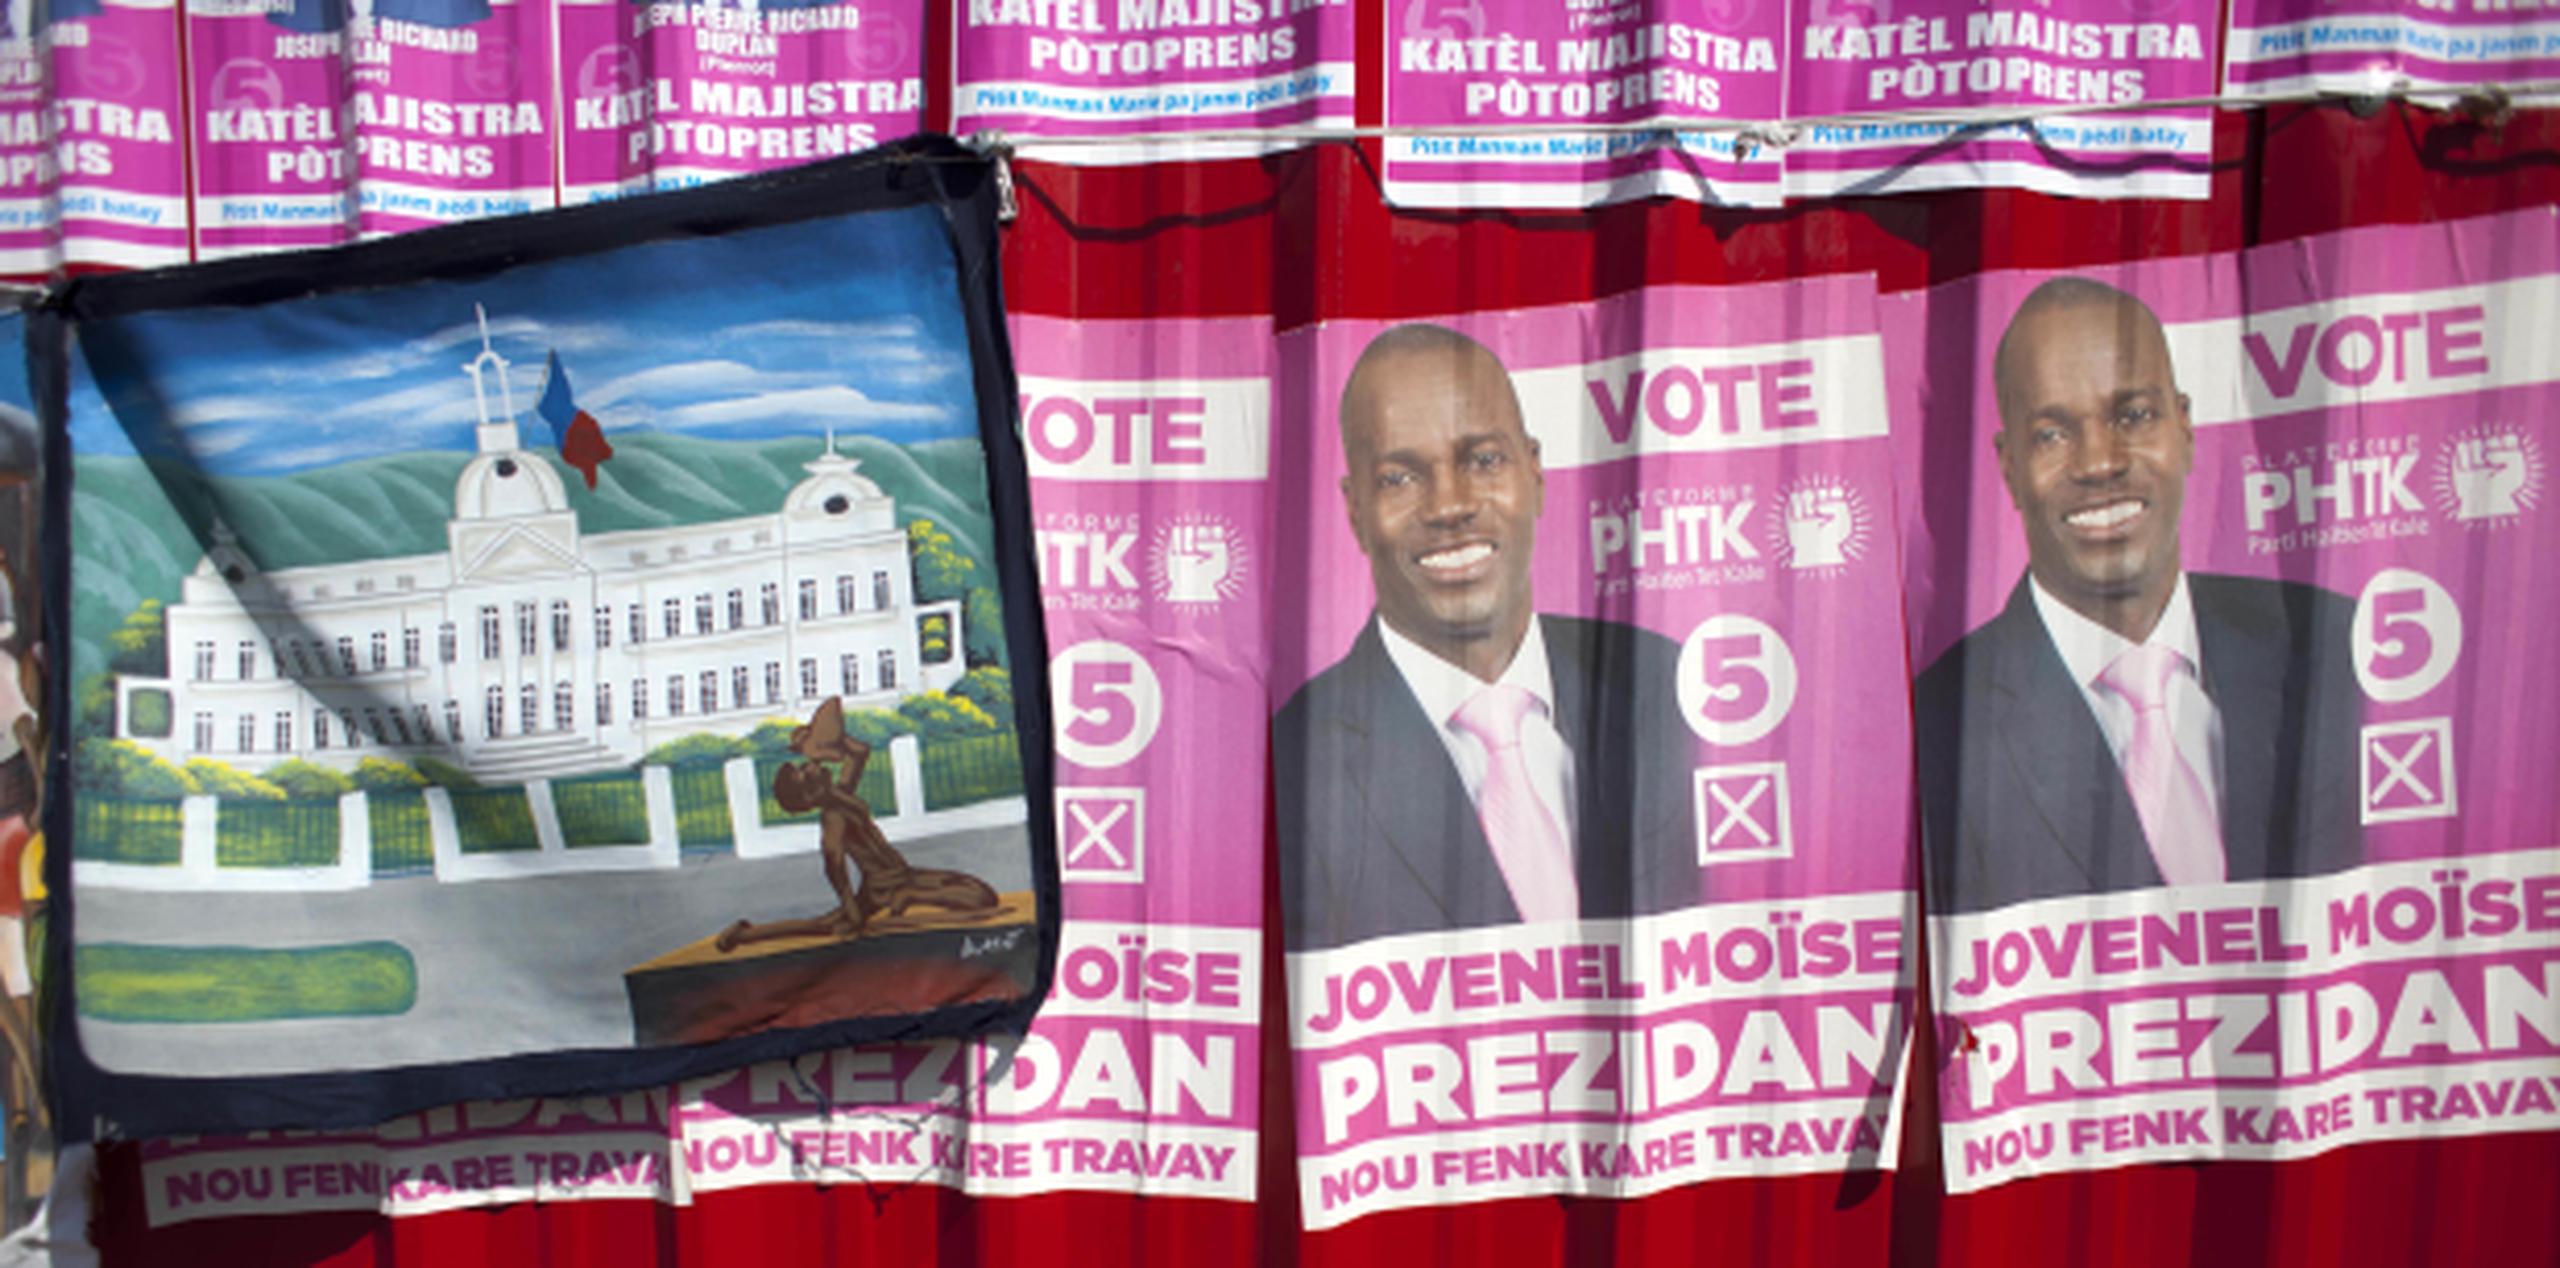 Parte de la propaganda política en Haití, donde unos 54 candidatos aspiraban a la presidencia en un proceso que se tornó fraudulento. (AP)